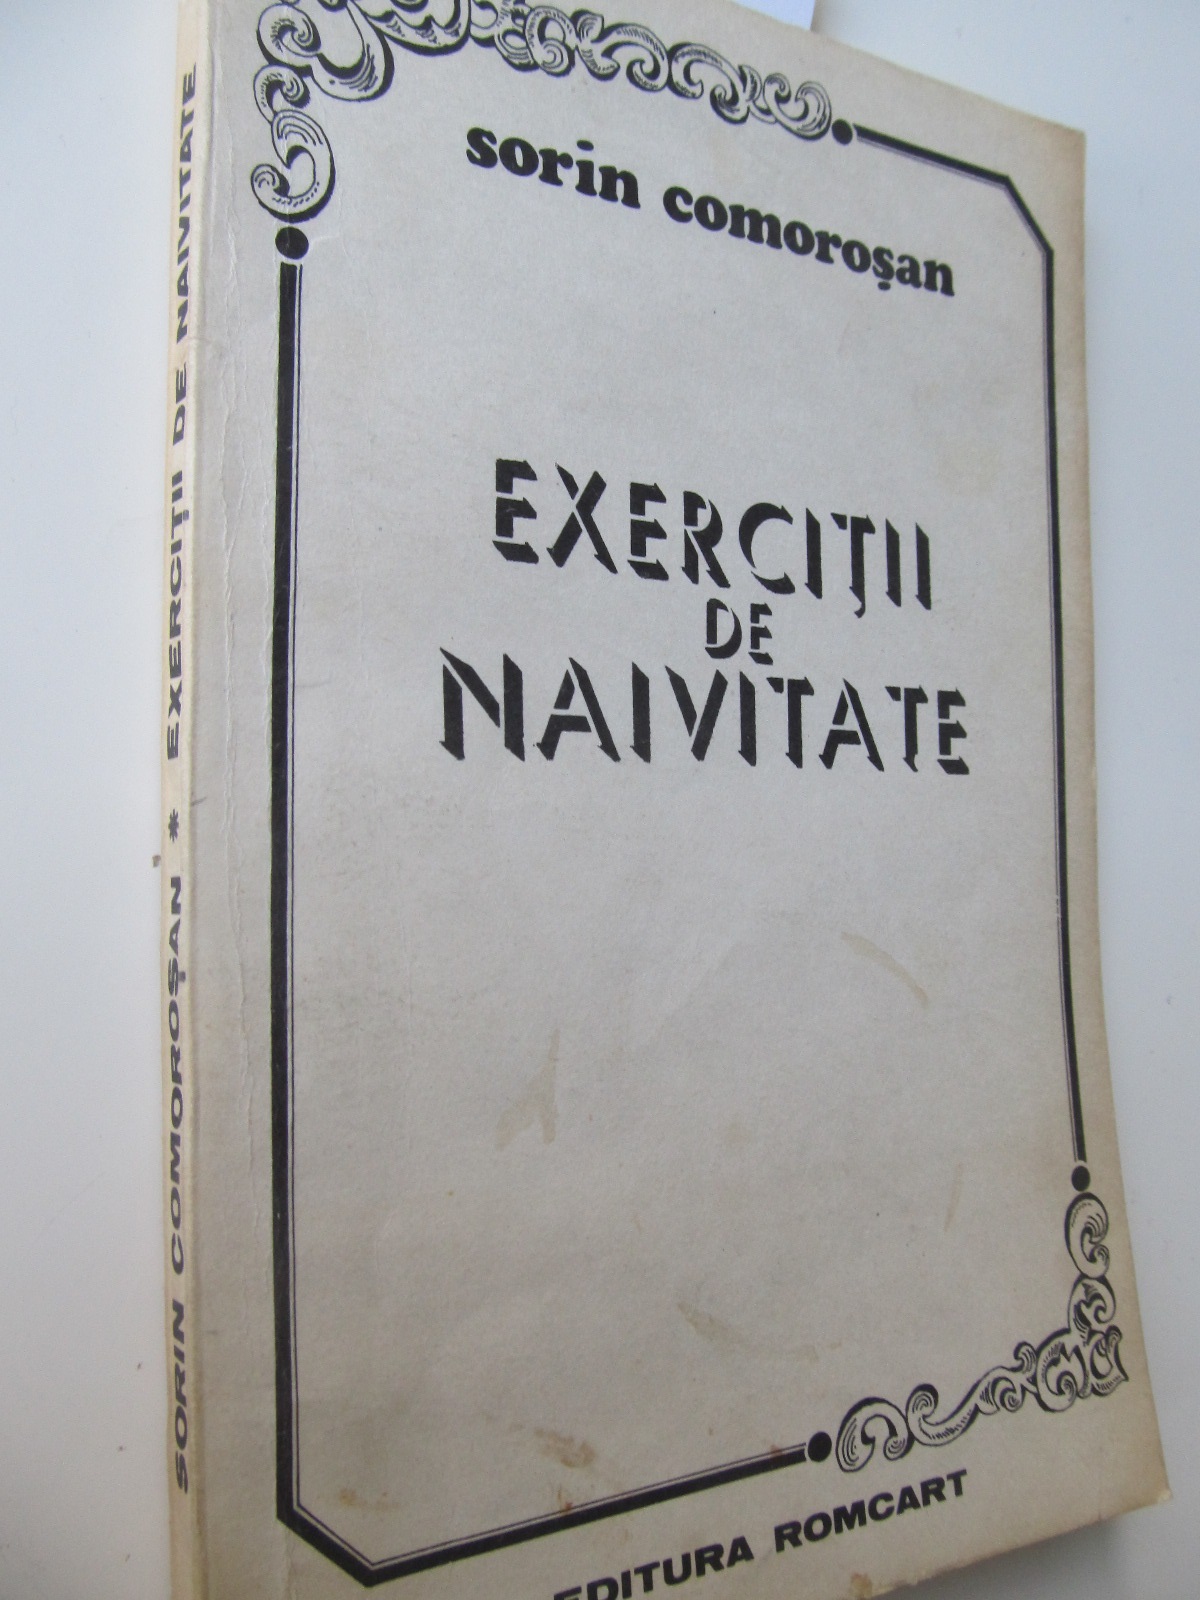 Exercitii de naivitate - Sorin Comorosan | Detalii carte